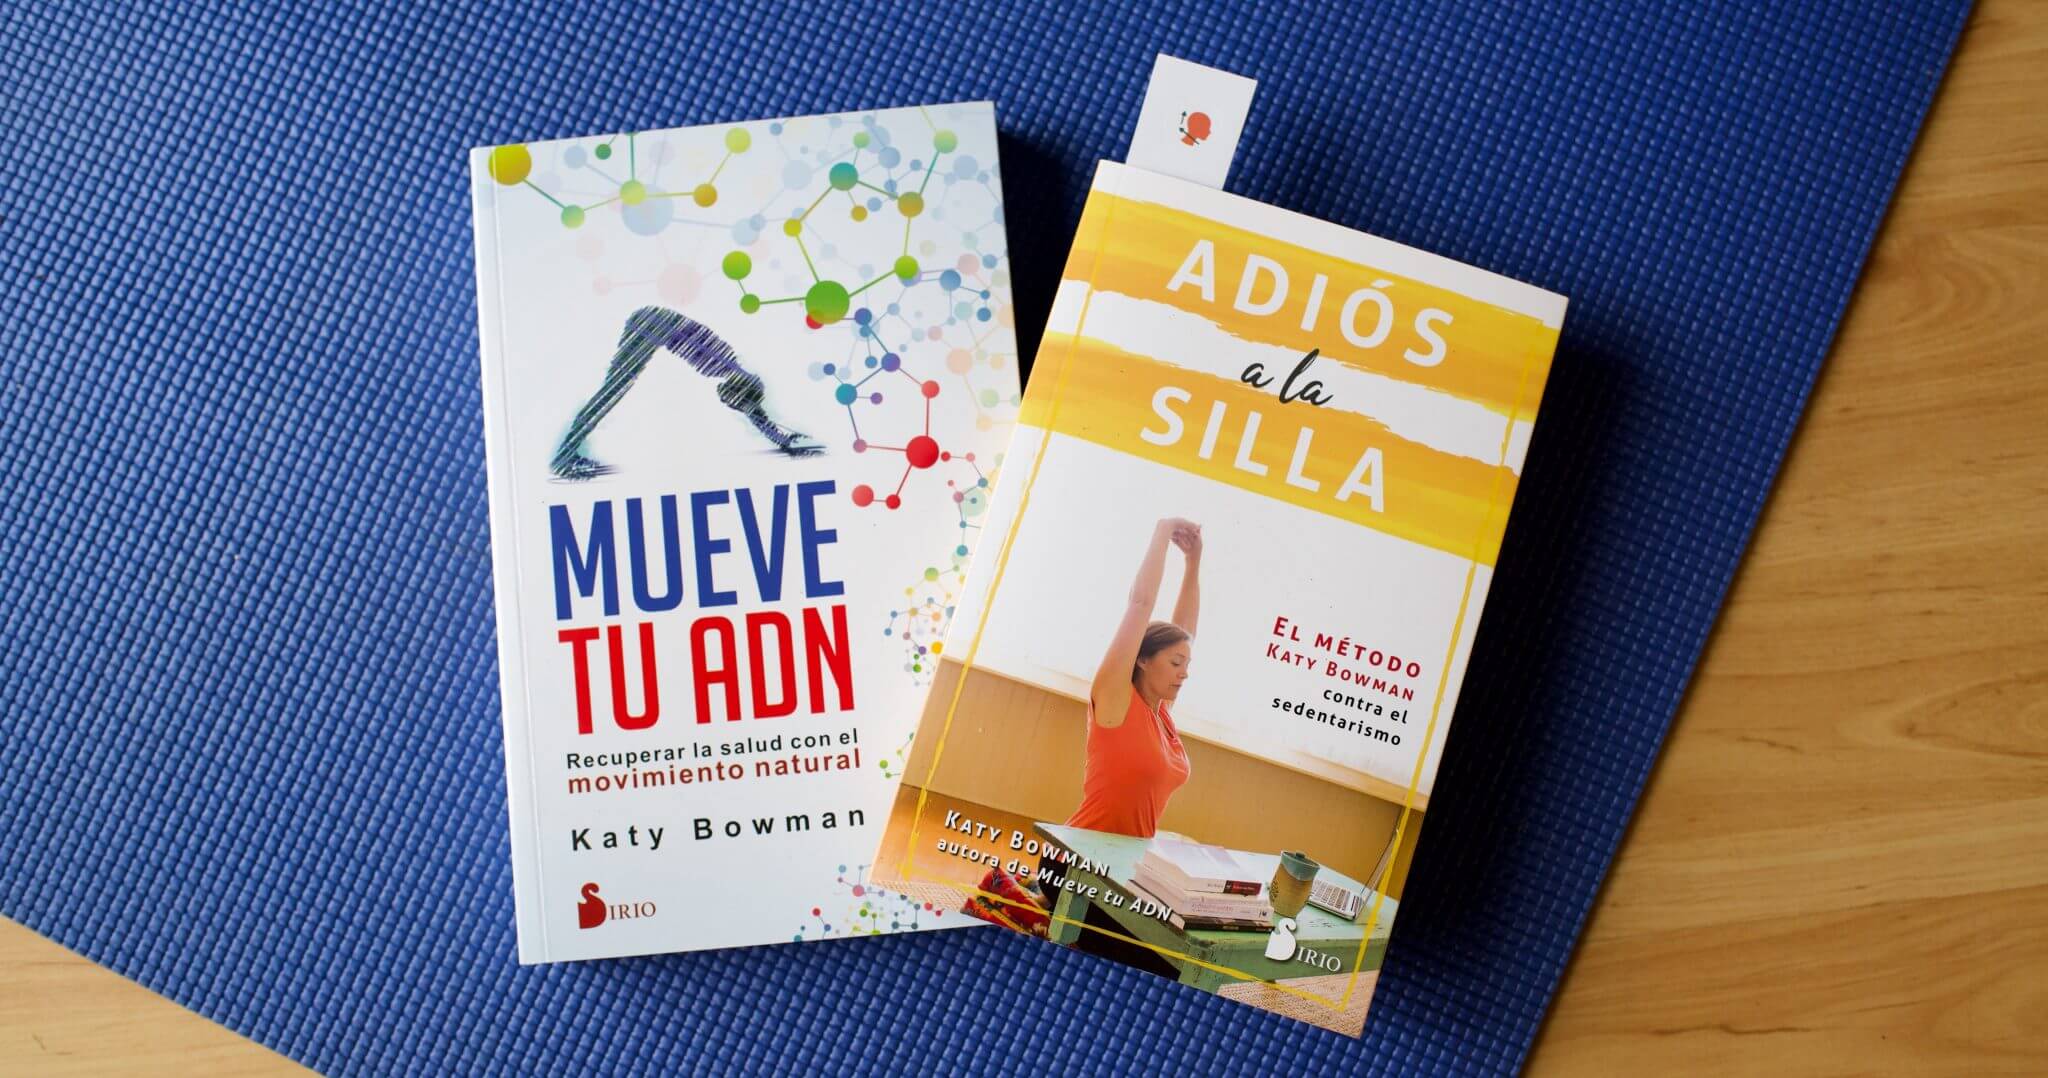 Mueve tu ADN and Adios a la Silla by Katy Bowman